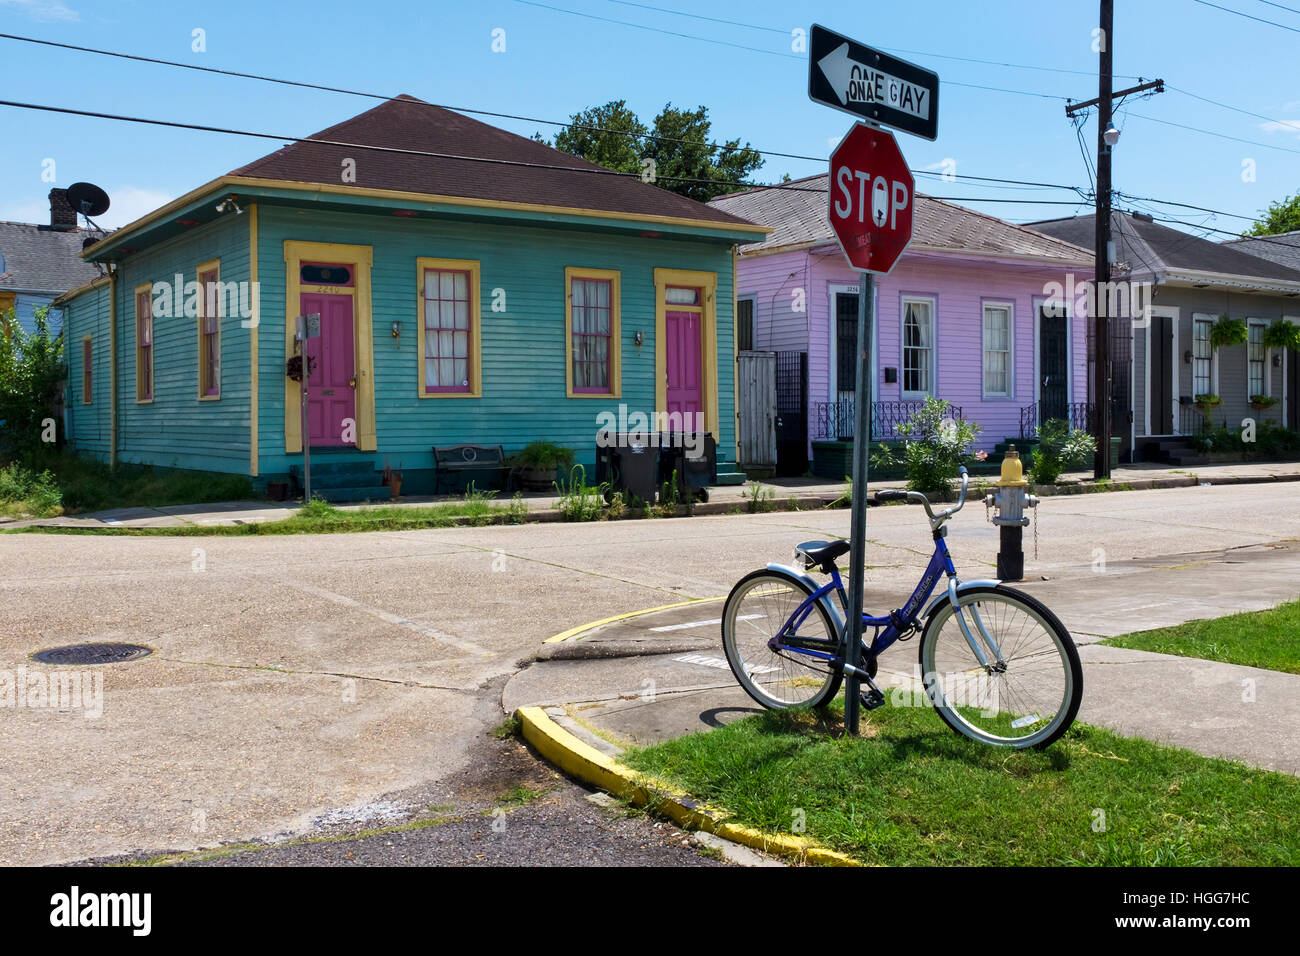 New Orleans, Louisiana, USA - 17. Juni 2014: Fahrrad geparkt an einem Stoppschild vor einer Reihe von bunten Häusern in New Orleans Stockfoto